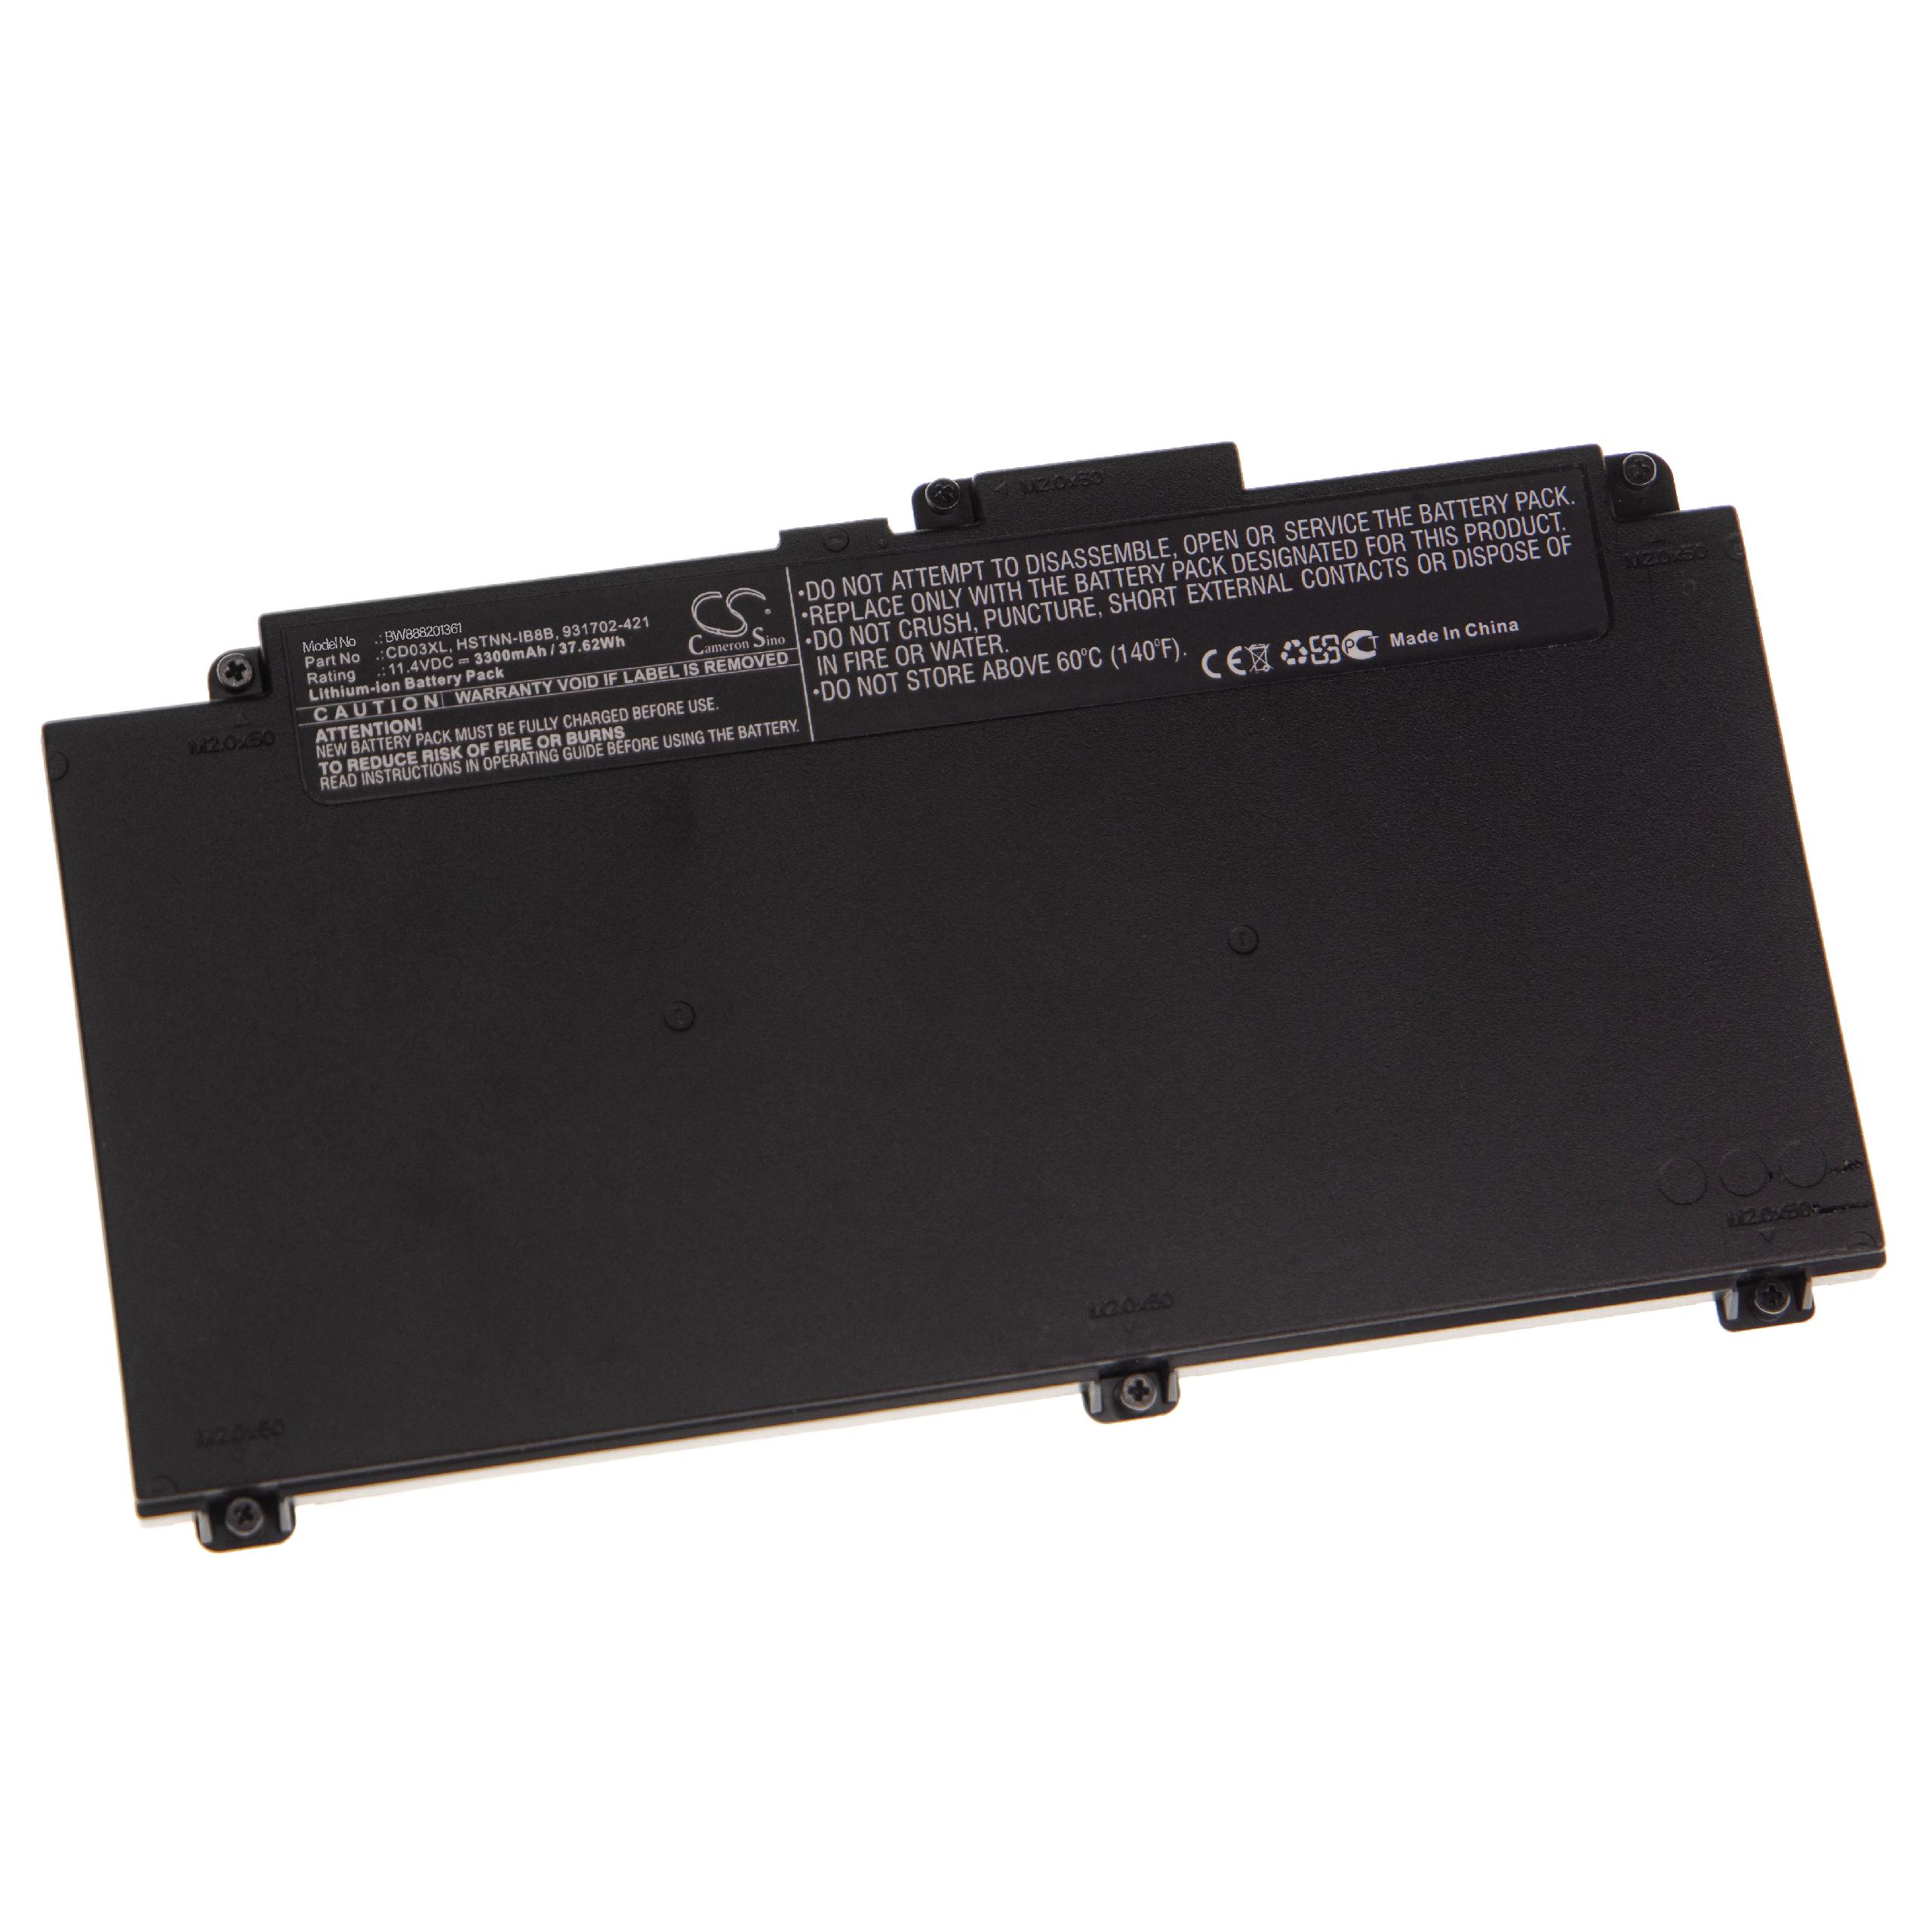 Batterie remplace HP 931702-421, 931702-171, 931702-541 pour ordinateur portable - 3300mAh 11,4V Li-ion, noir